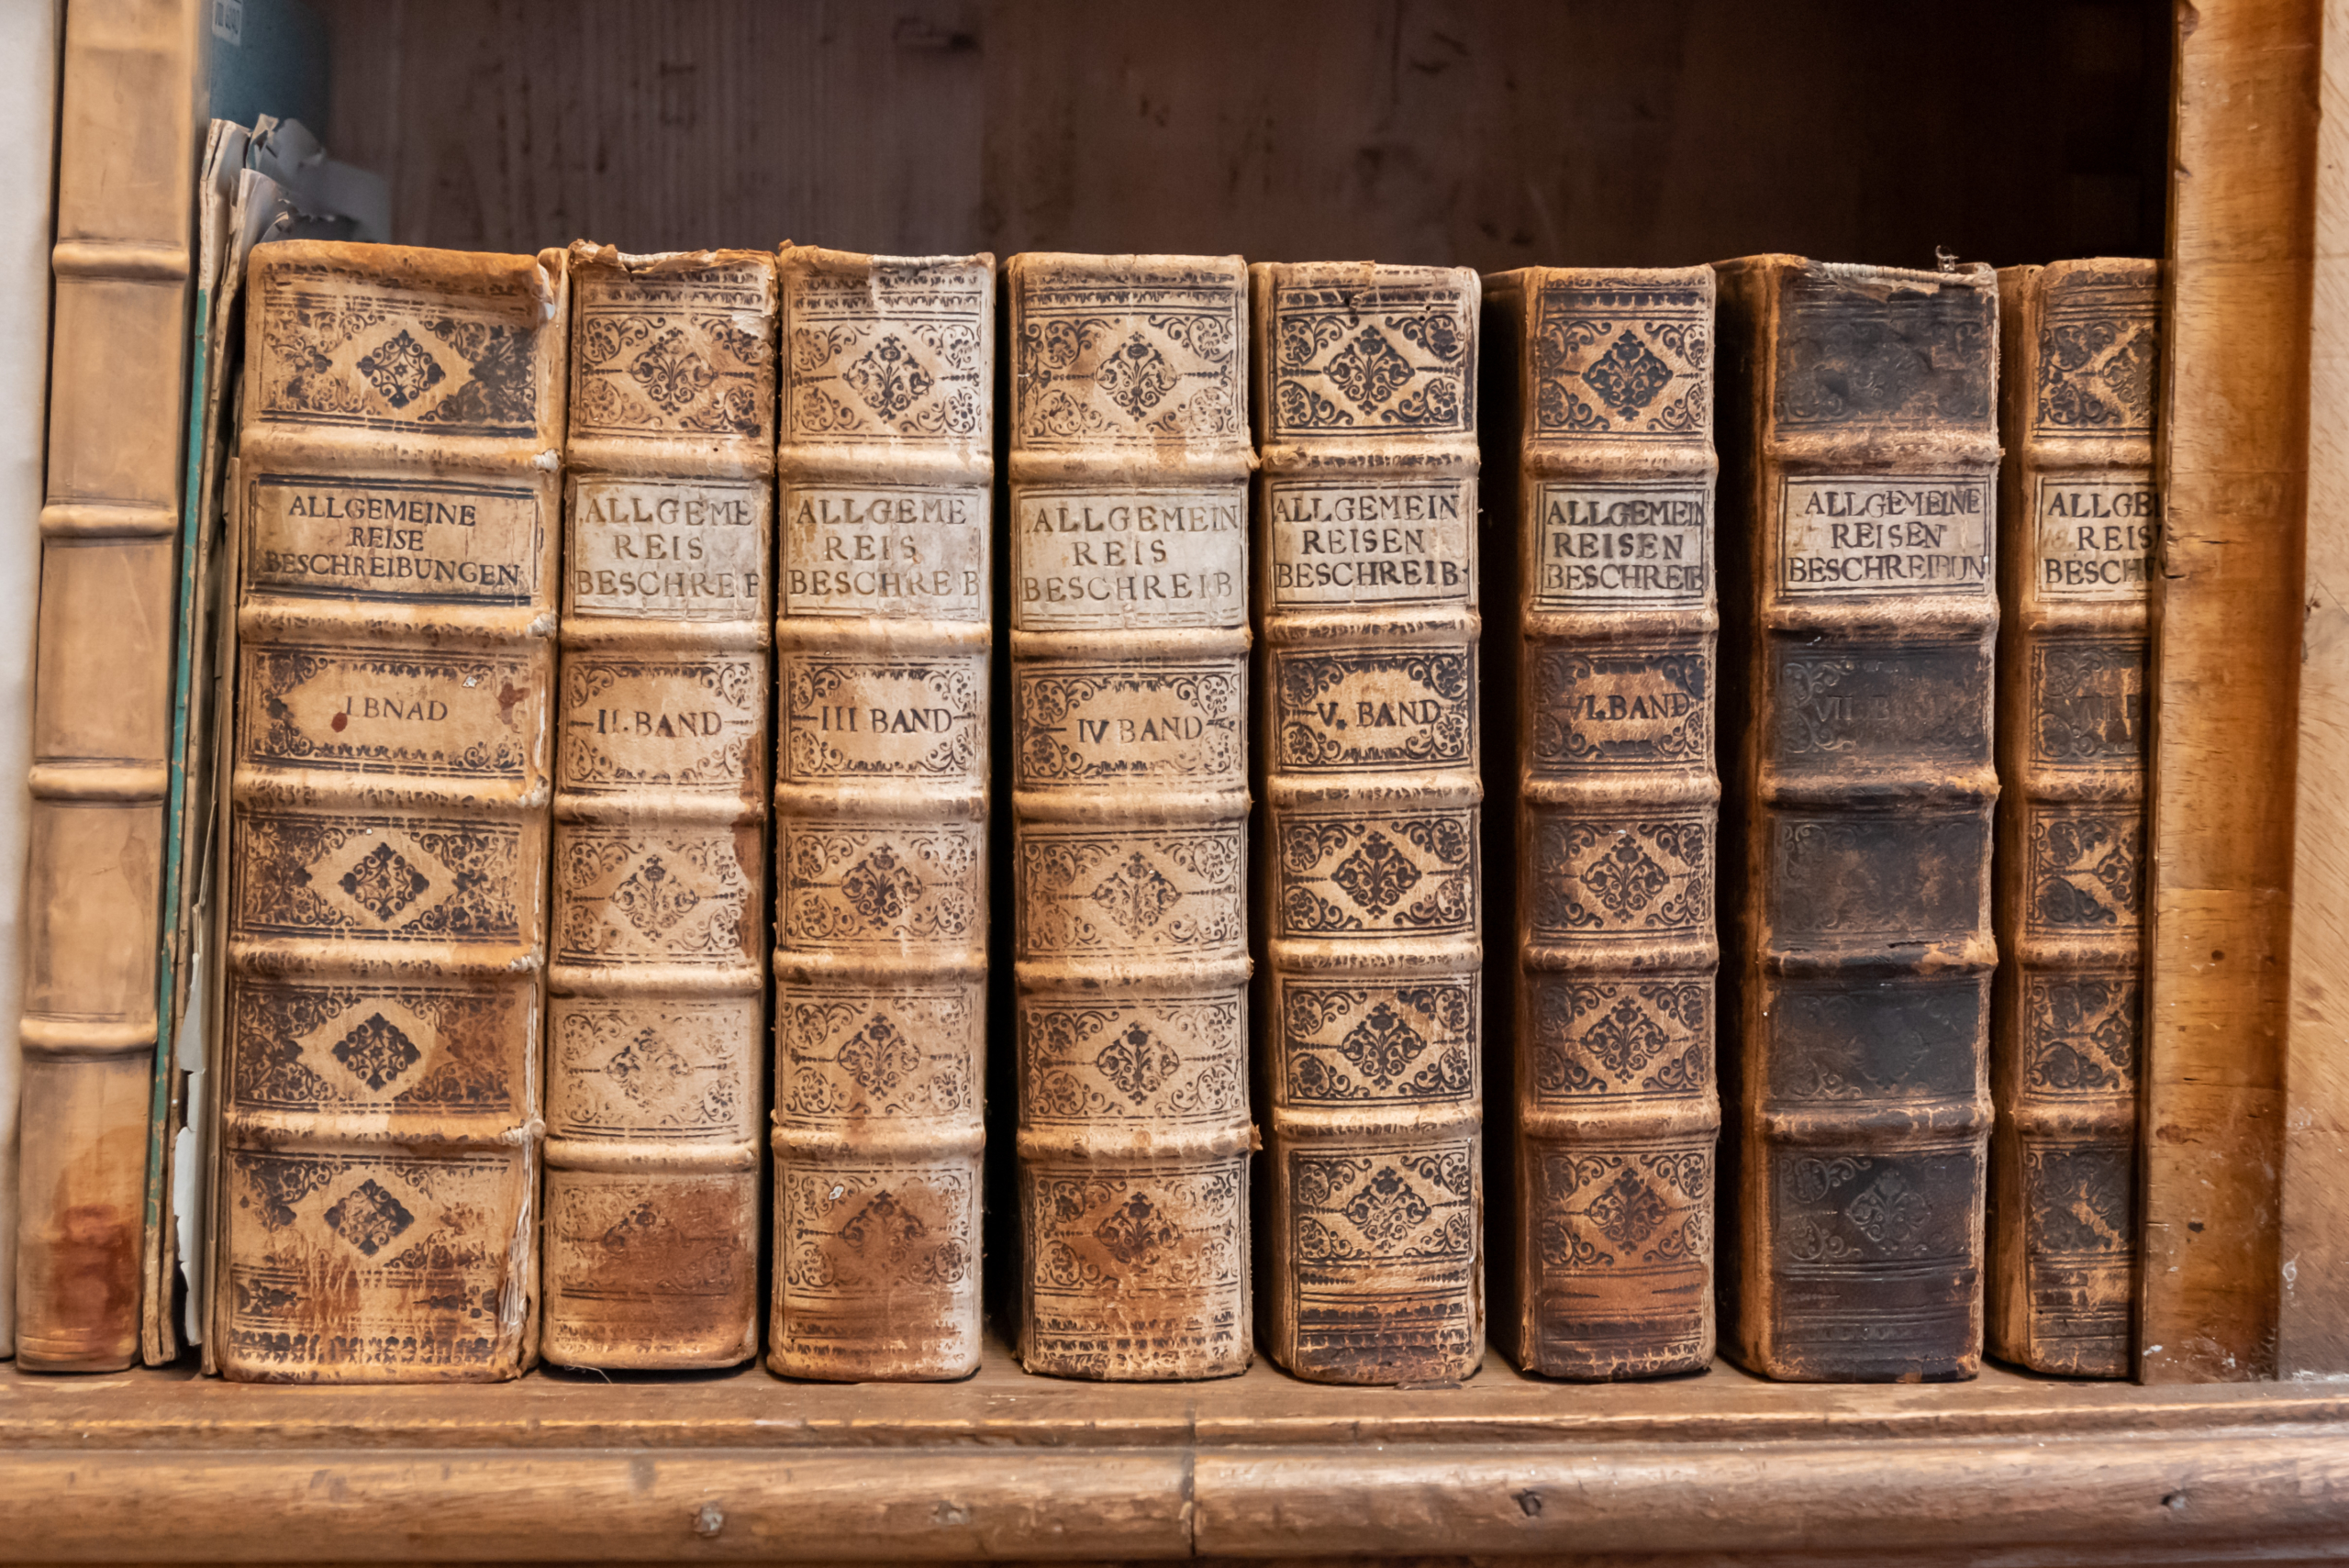 Thư viện Thánh Florian cất trữ nhiều cuốn sách khác nhau từ thế kỷ 16 đến thế kỷ 18. (Ảnh: Redfox1980/Shutterstock)